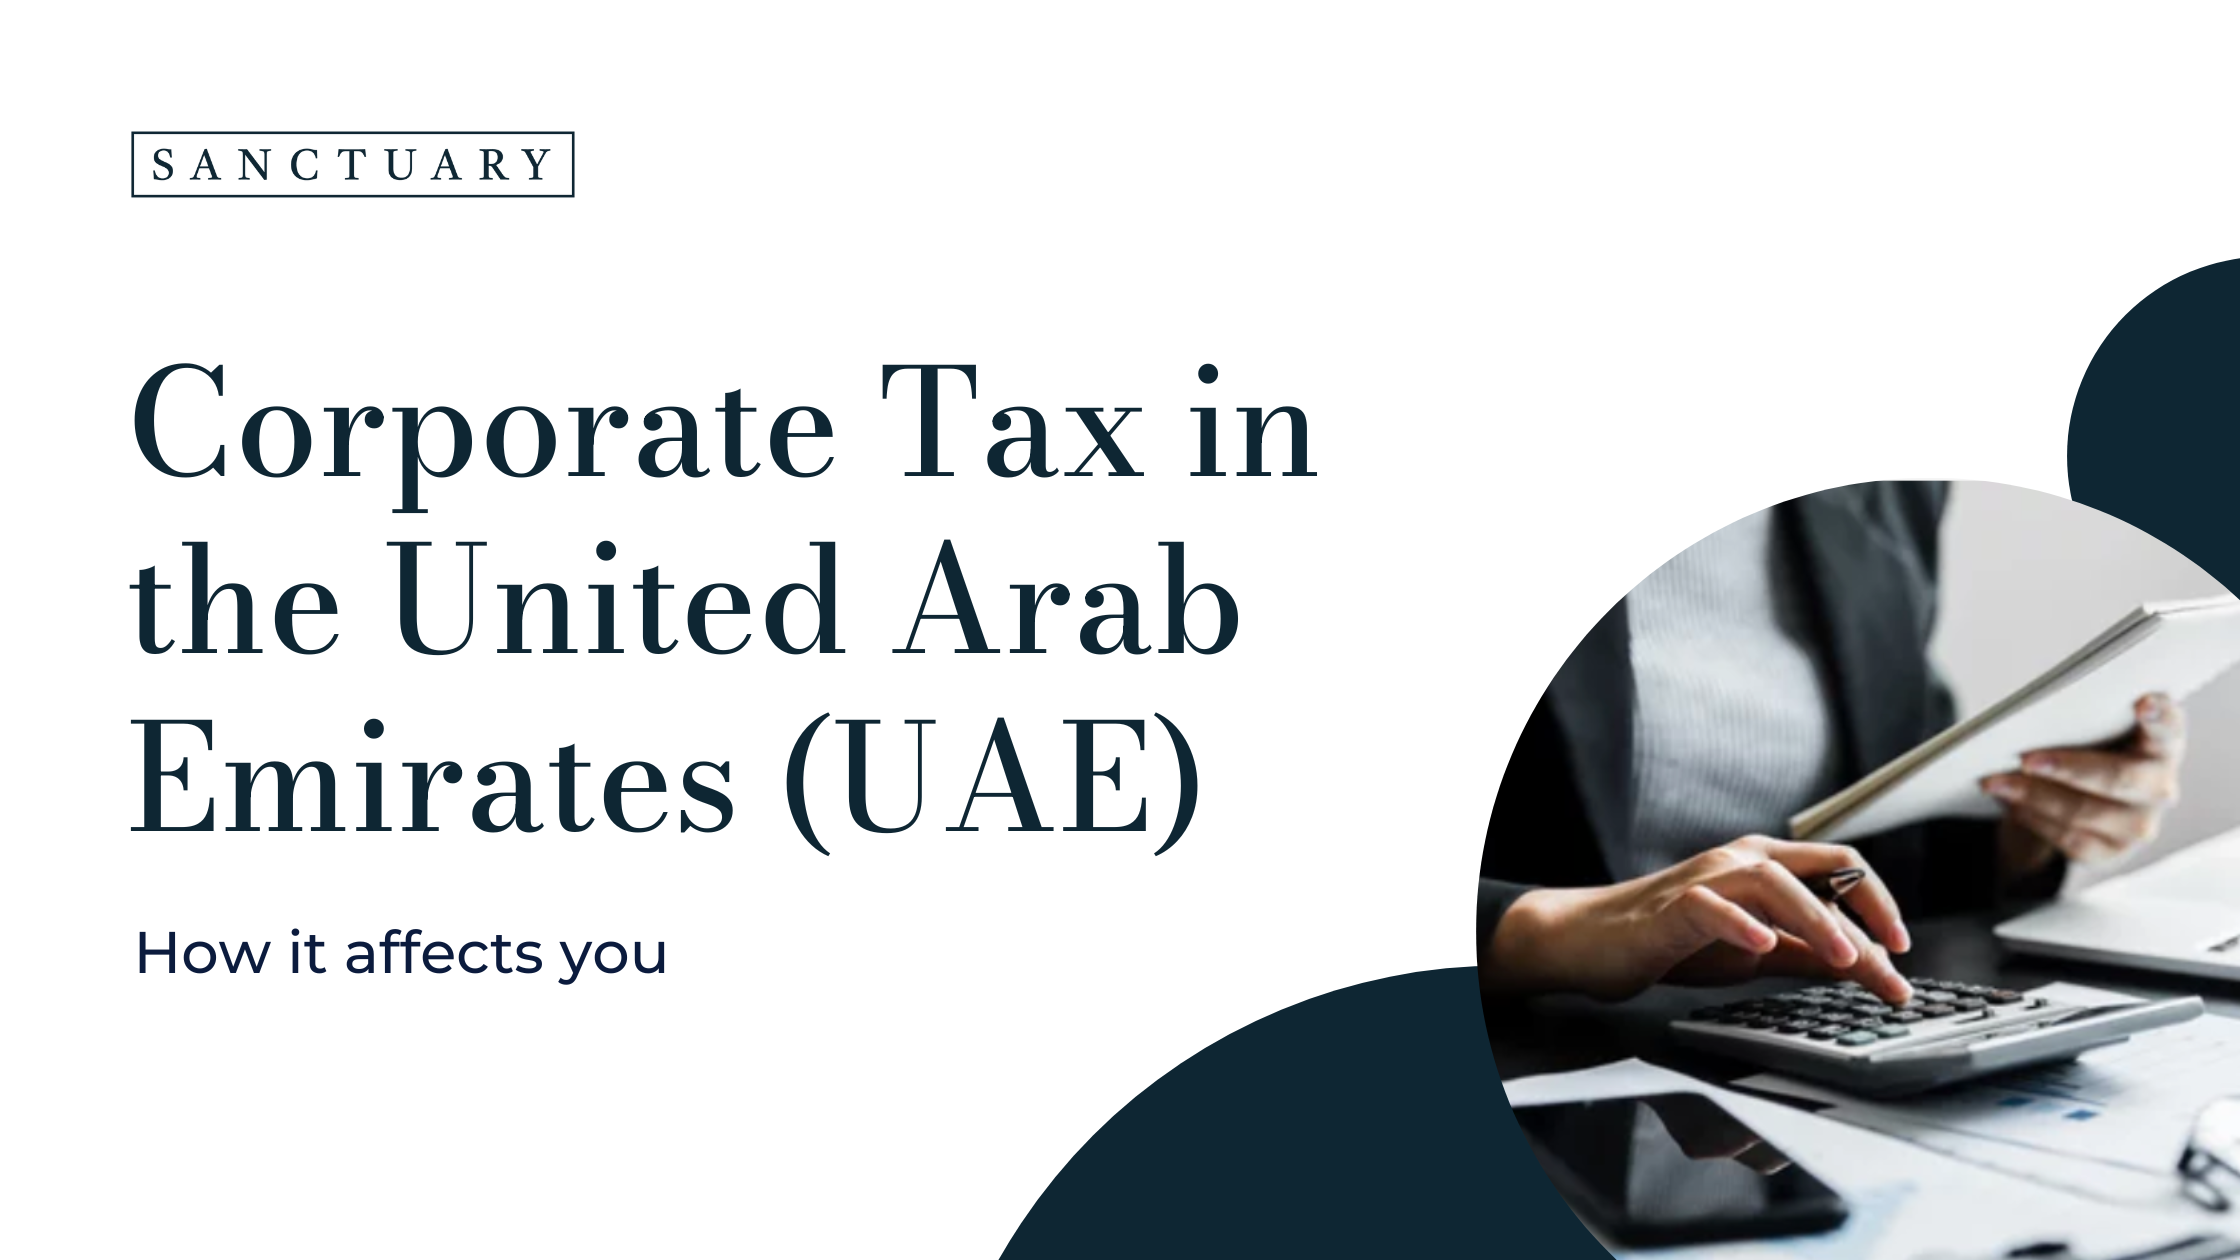 Tax Advisor Dubai | Corporate Tax Consultant UAE | Sanctuary